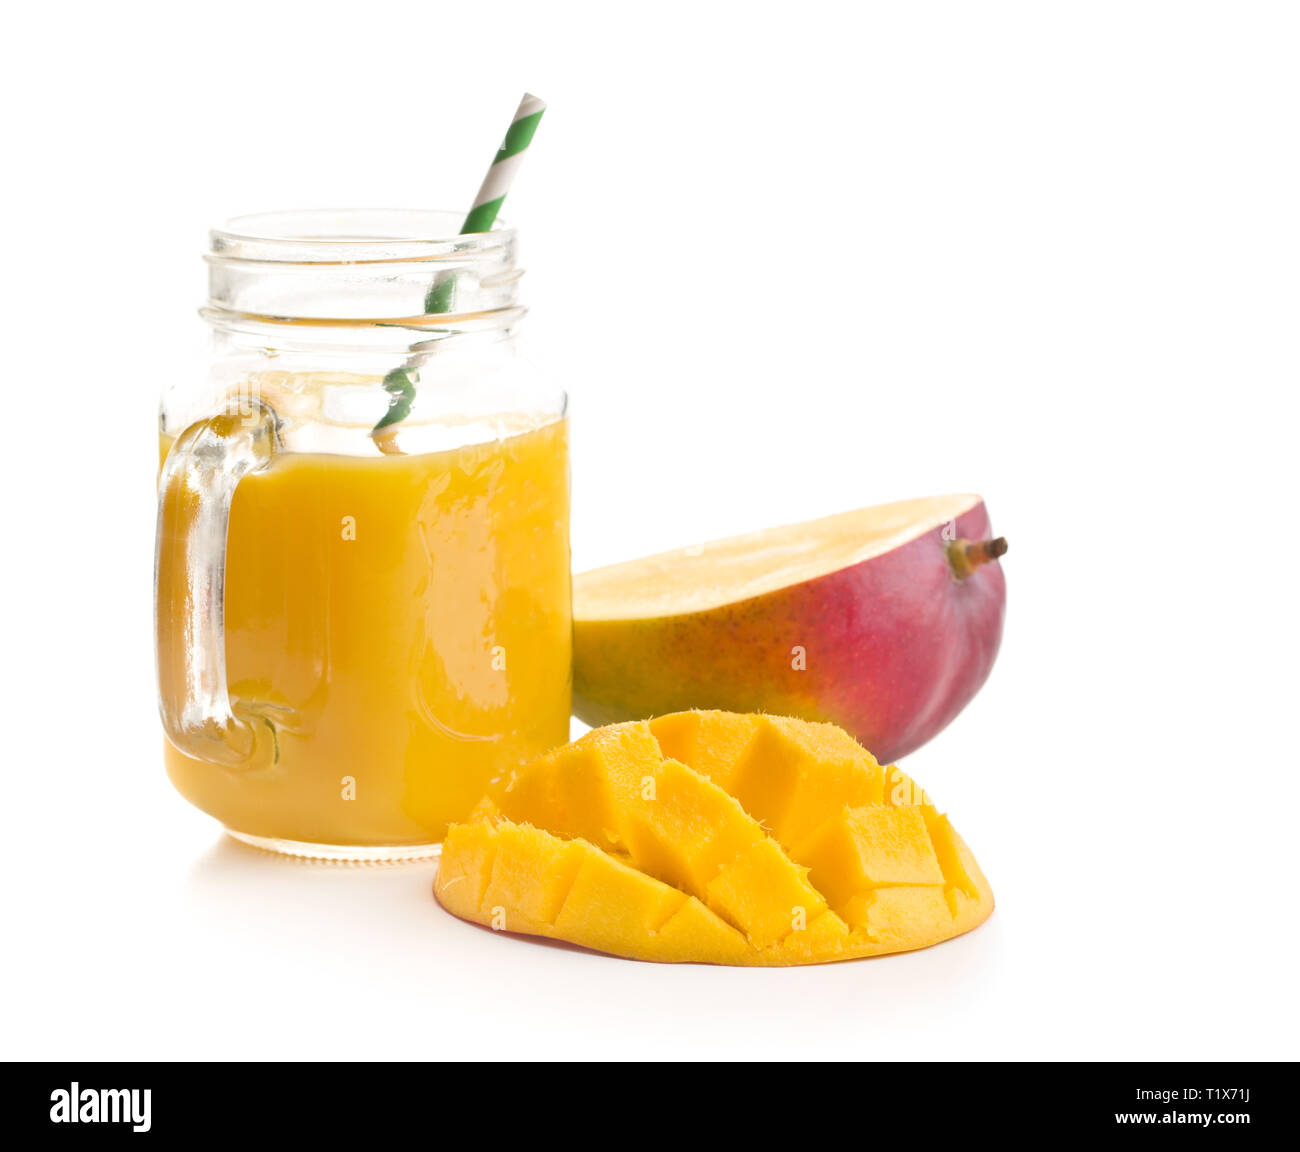 Ripe mango fruit and mango juice isolated on white background Stock Photo -  Alamy